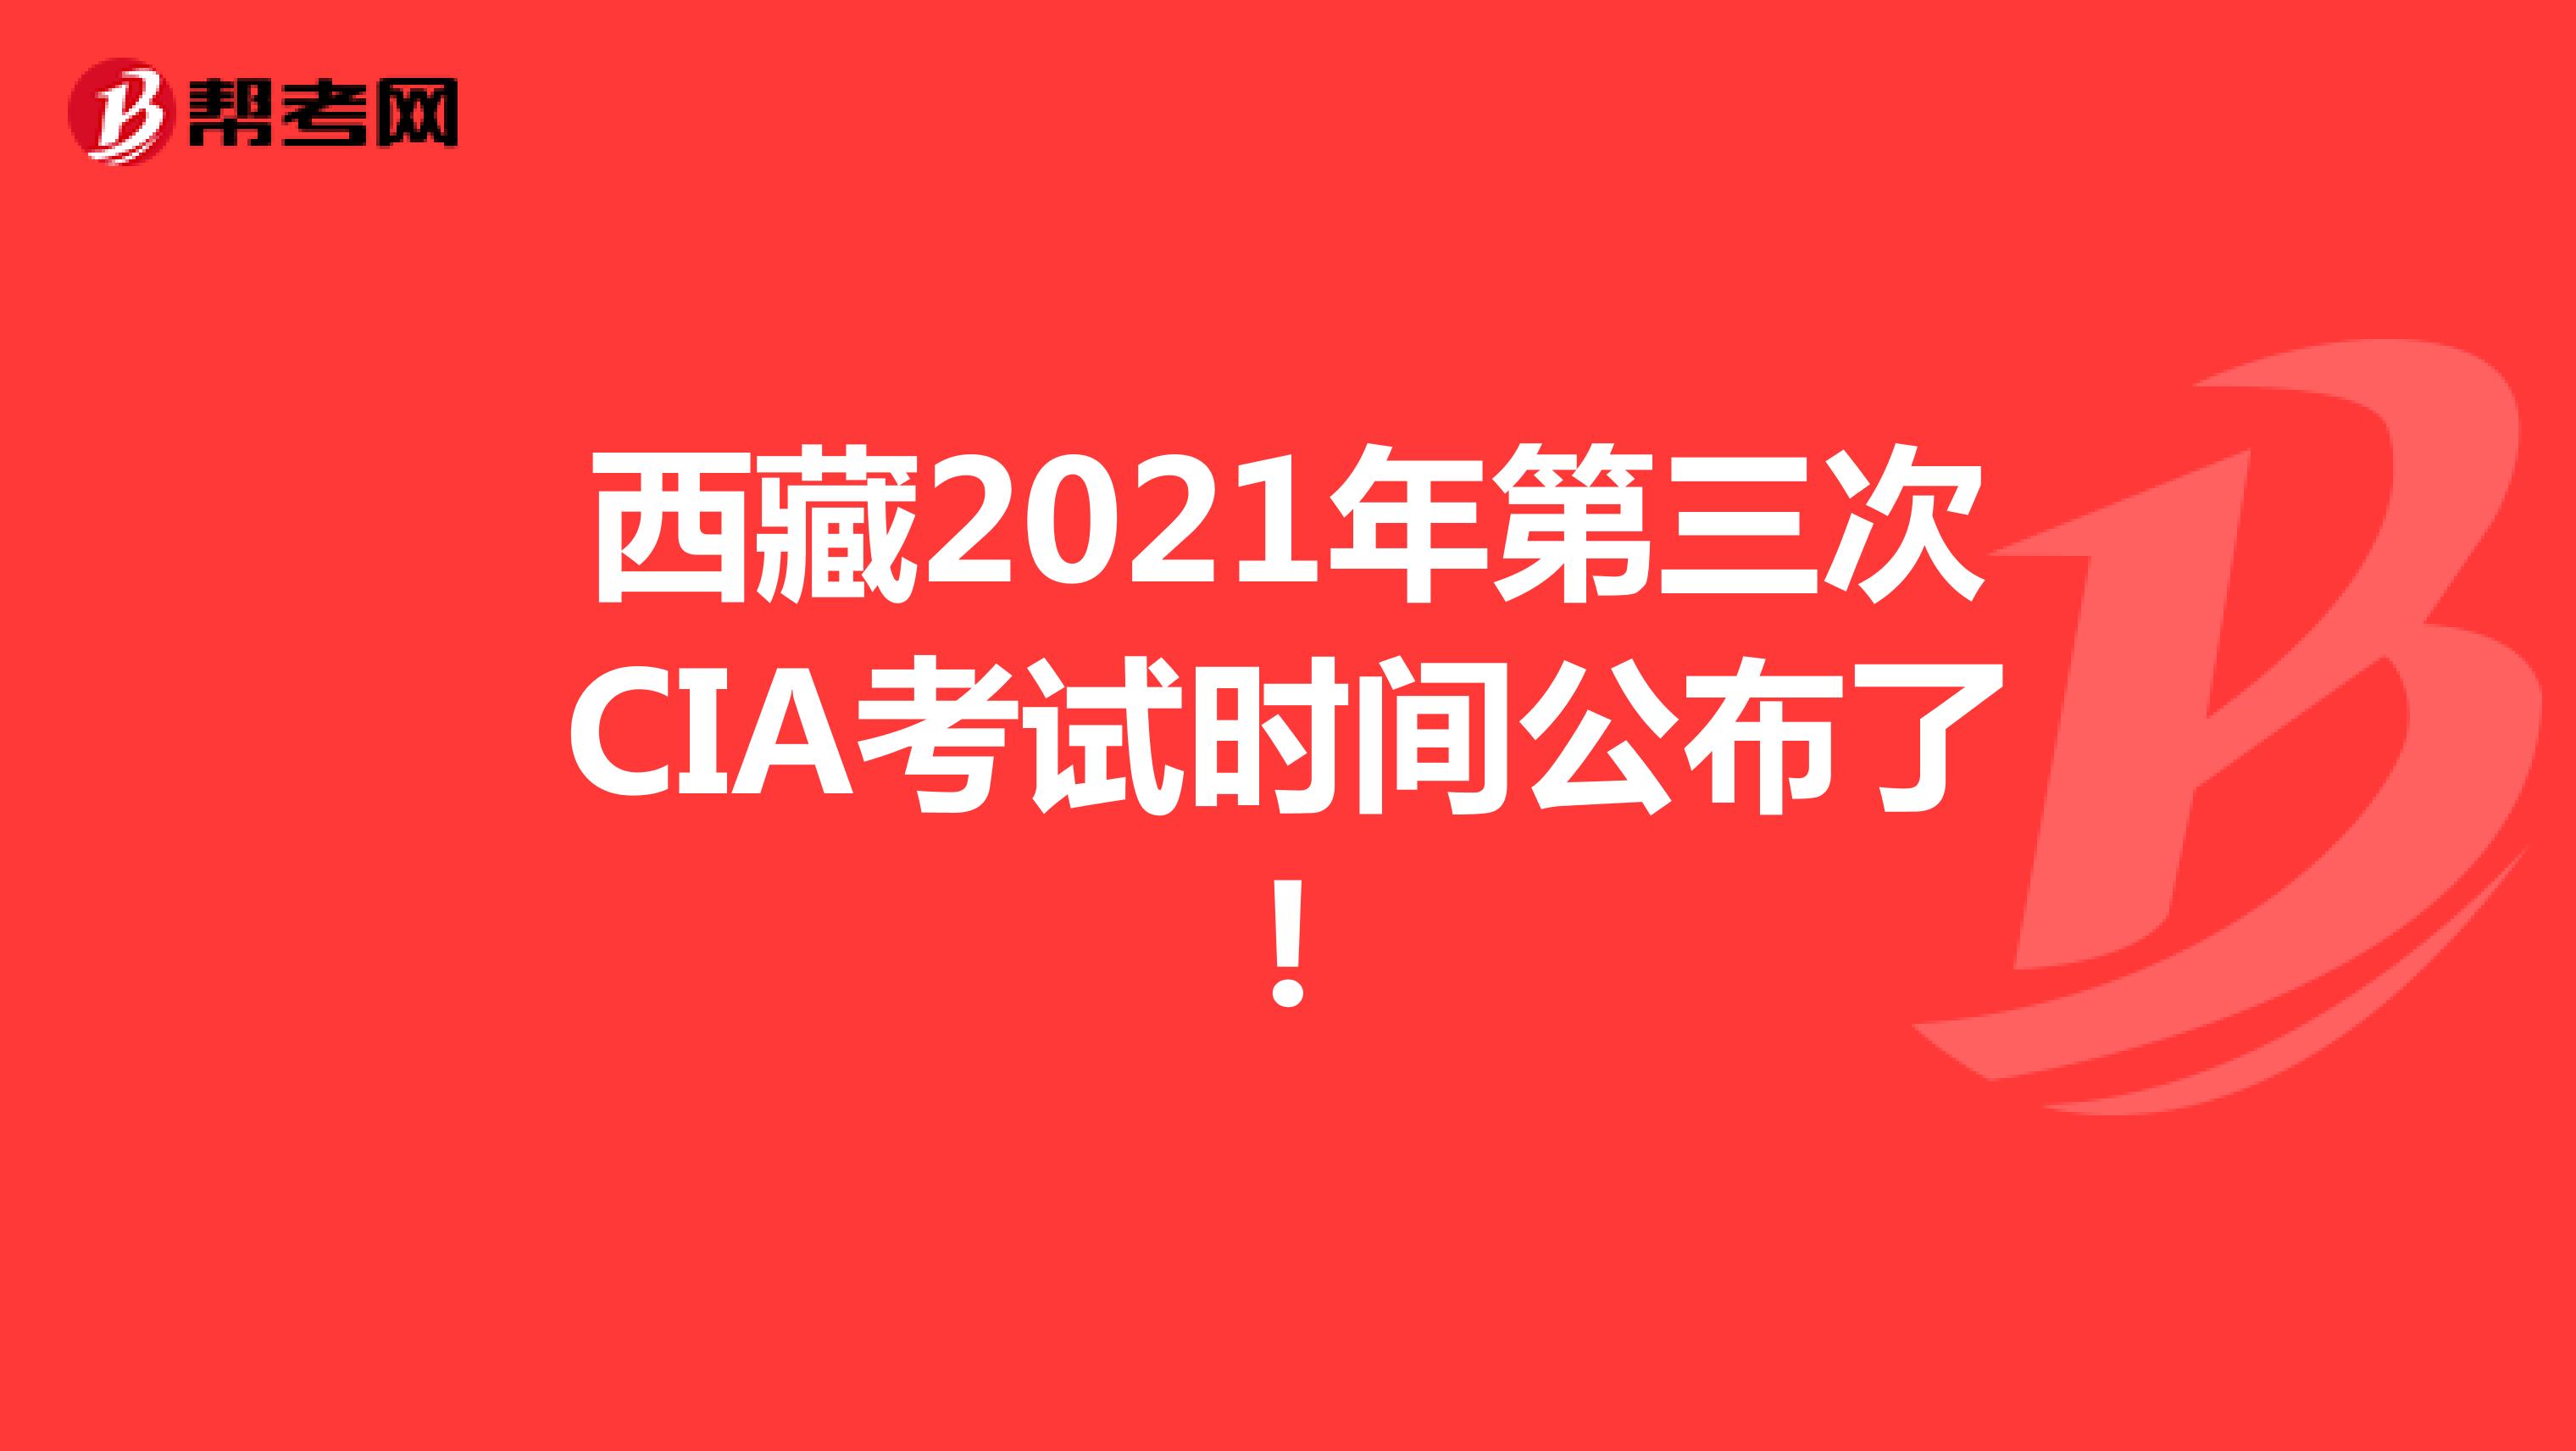 西藏2021年第三次CIA考试时间公布了!